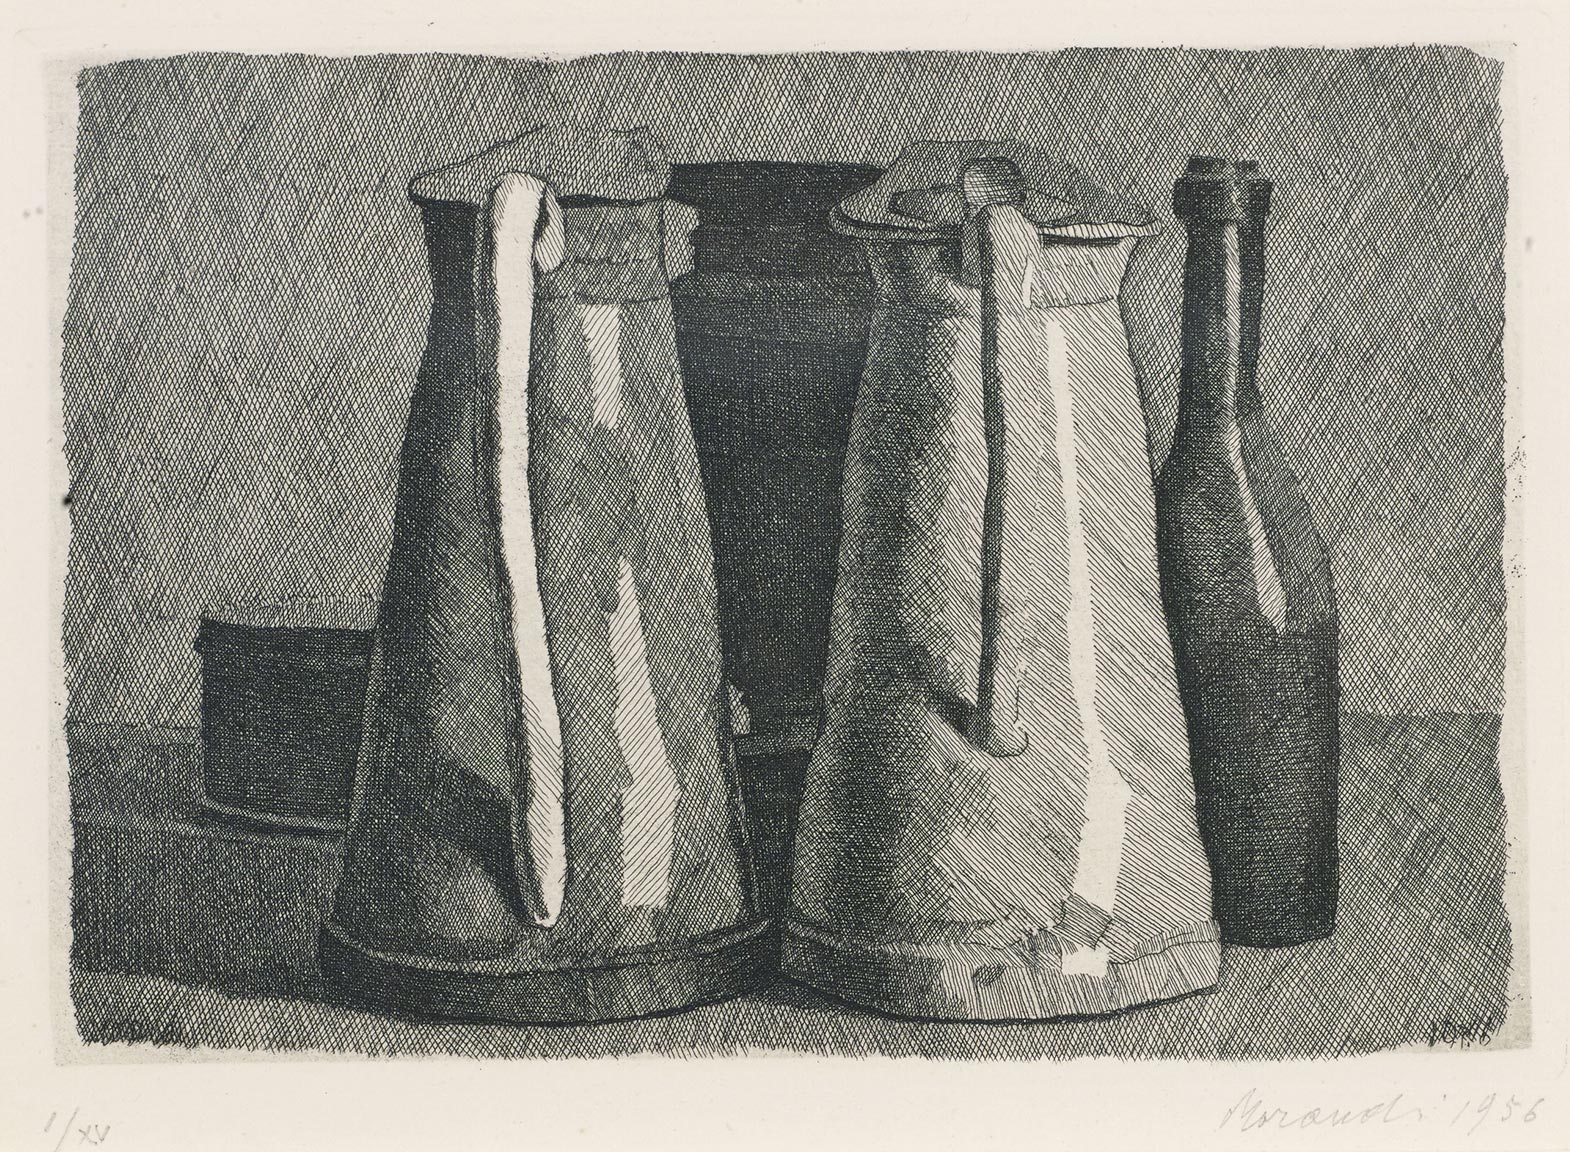 Giorgio Morandi, Still Life with Five Objects, 1956